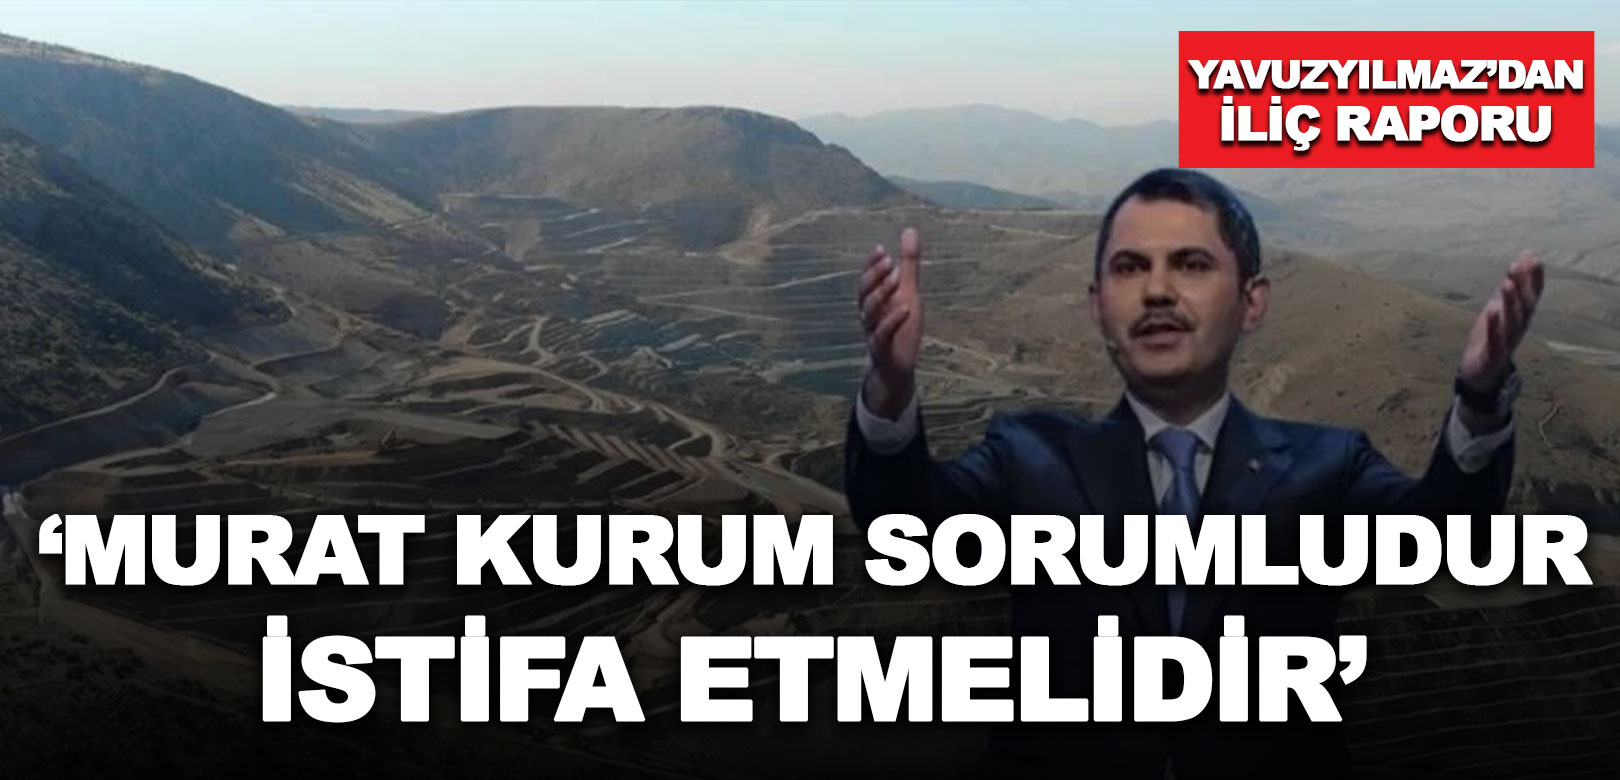 CHP Genel Başkan Yardımcısı Yavuzyılmaz'dan İliç raporu: Murat Kurum sorumludur, istifa etmelidir